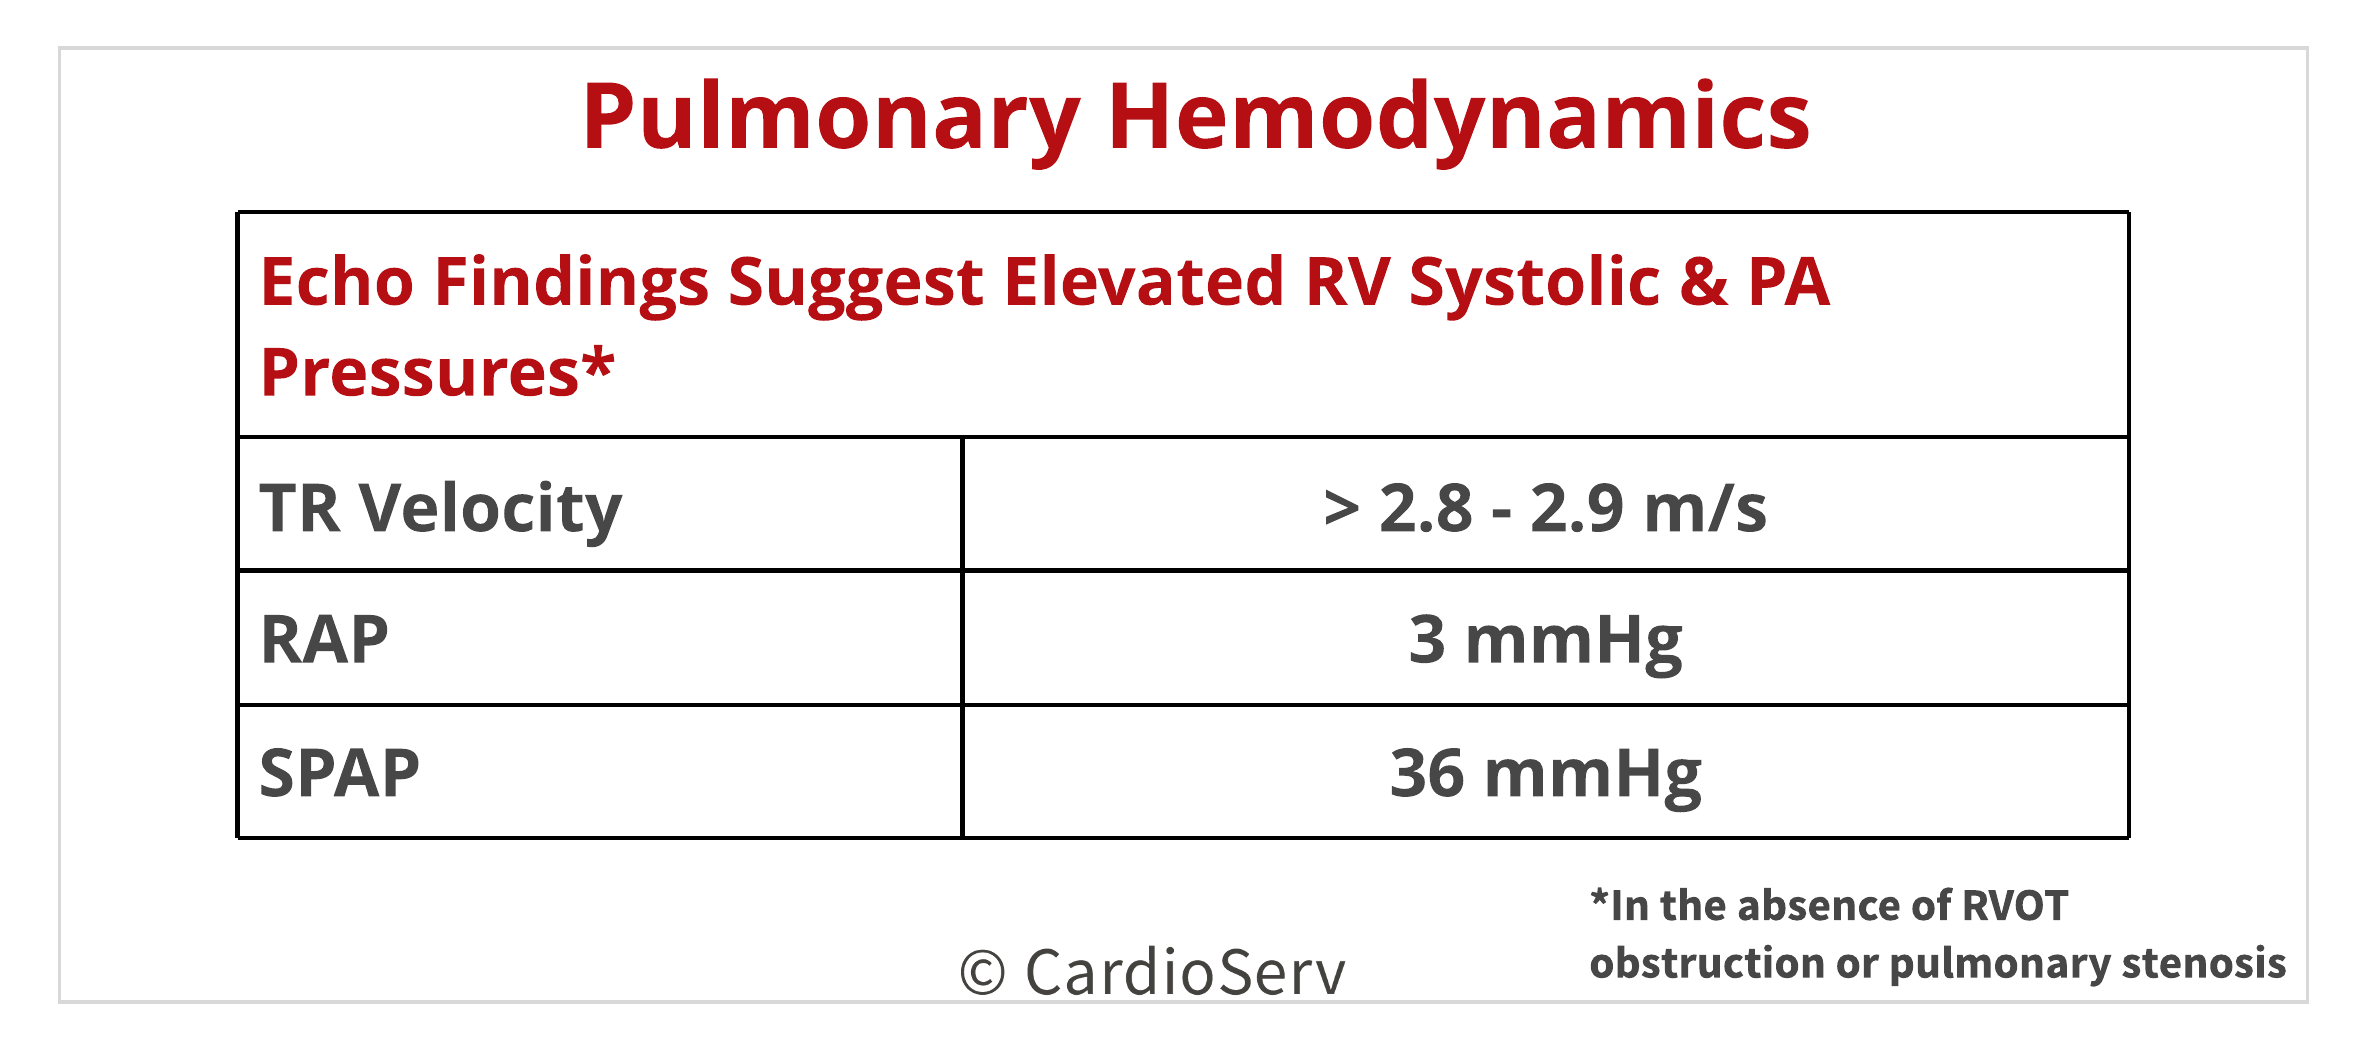 Pulmonary Hypertension Echo RVSP 